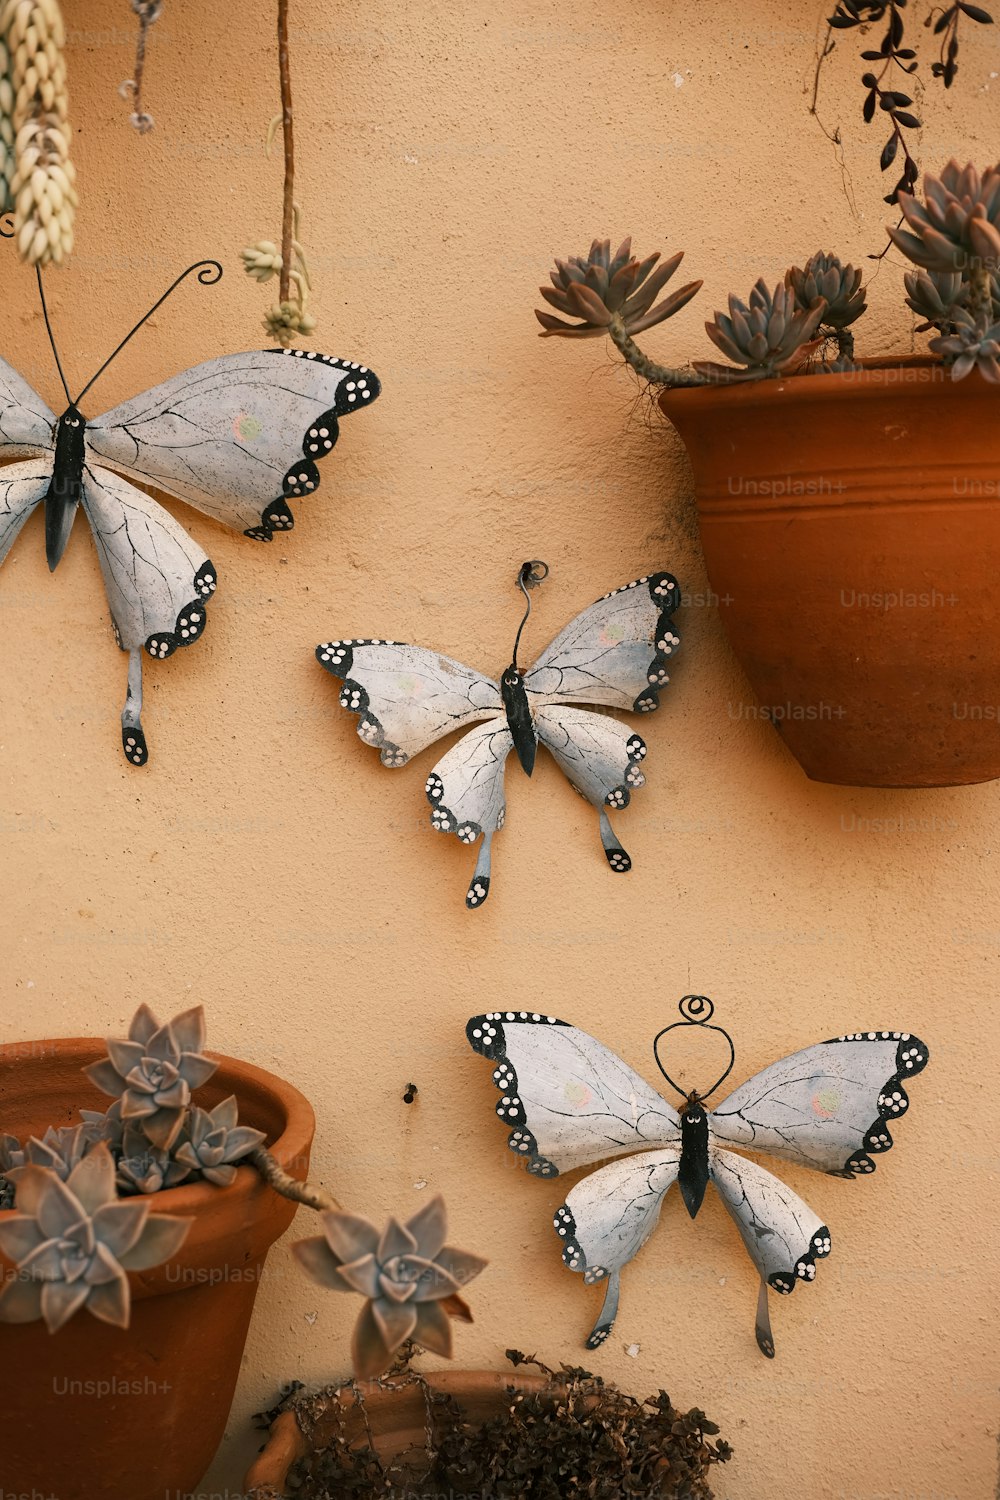 鉢植えの壁に3匹の蝶がぶら下がっている